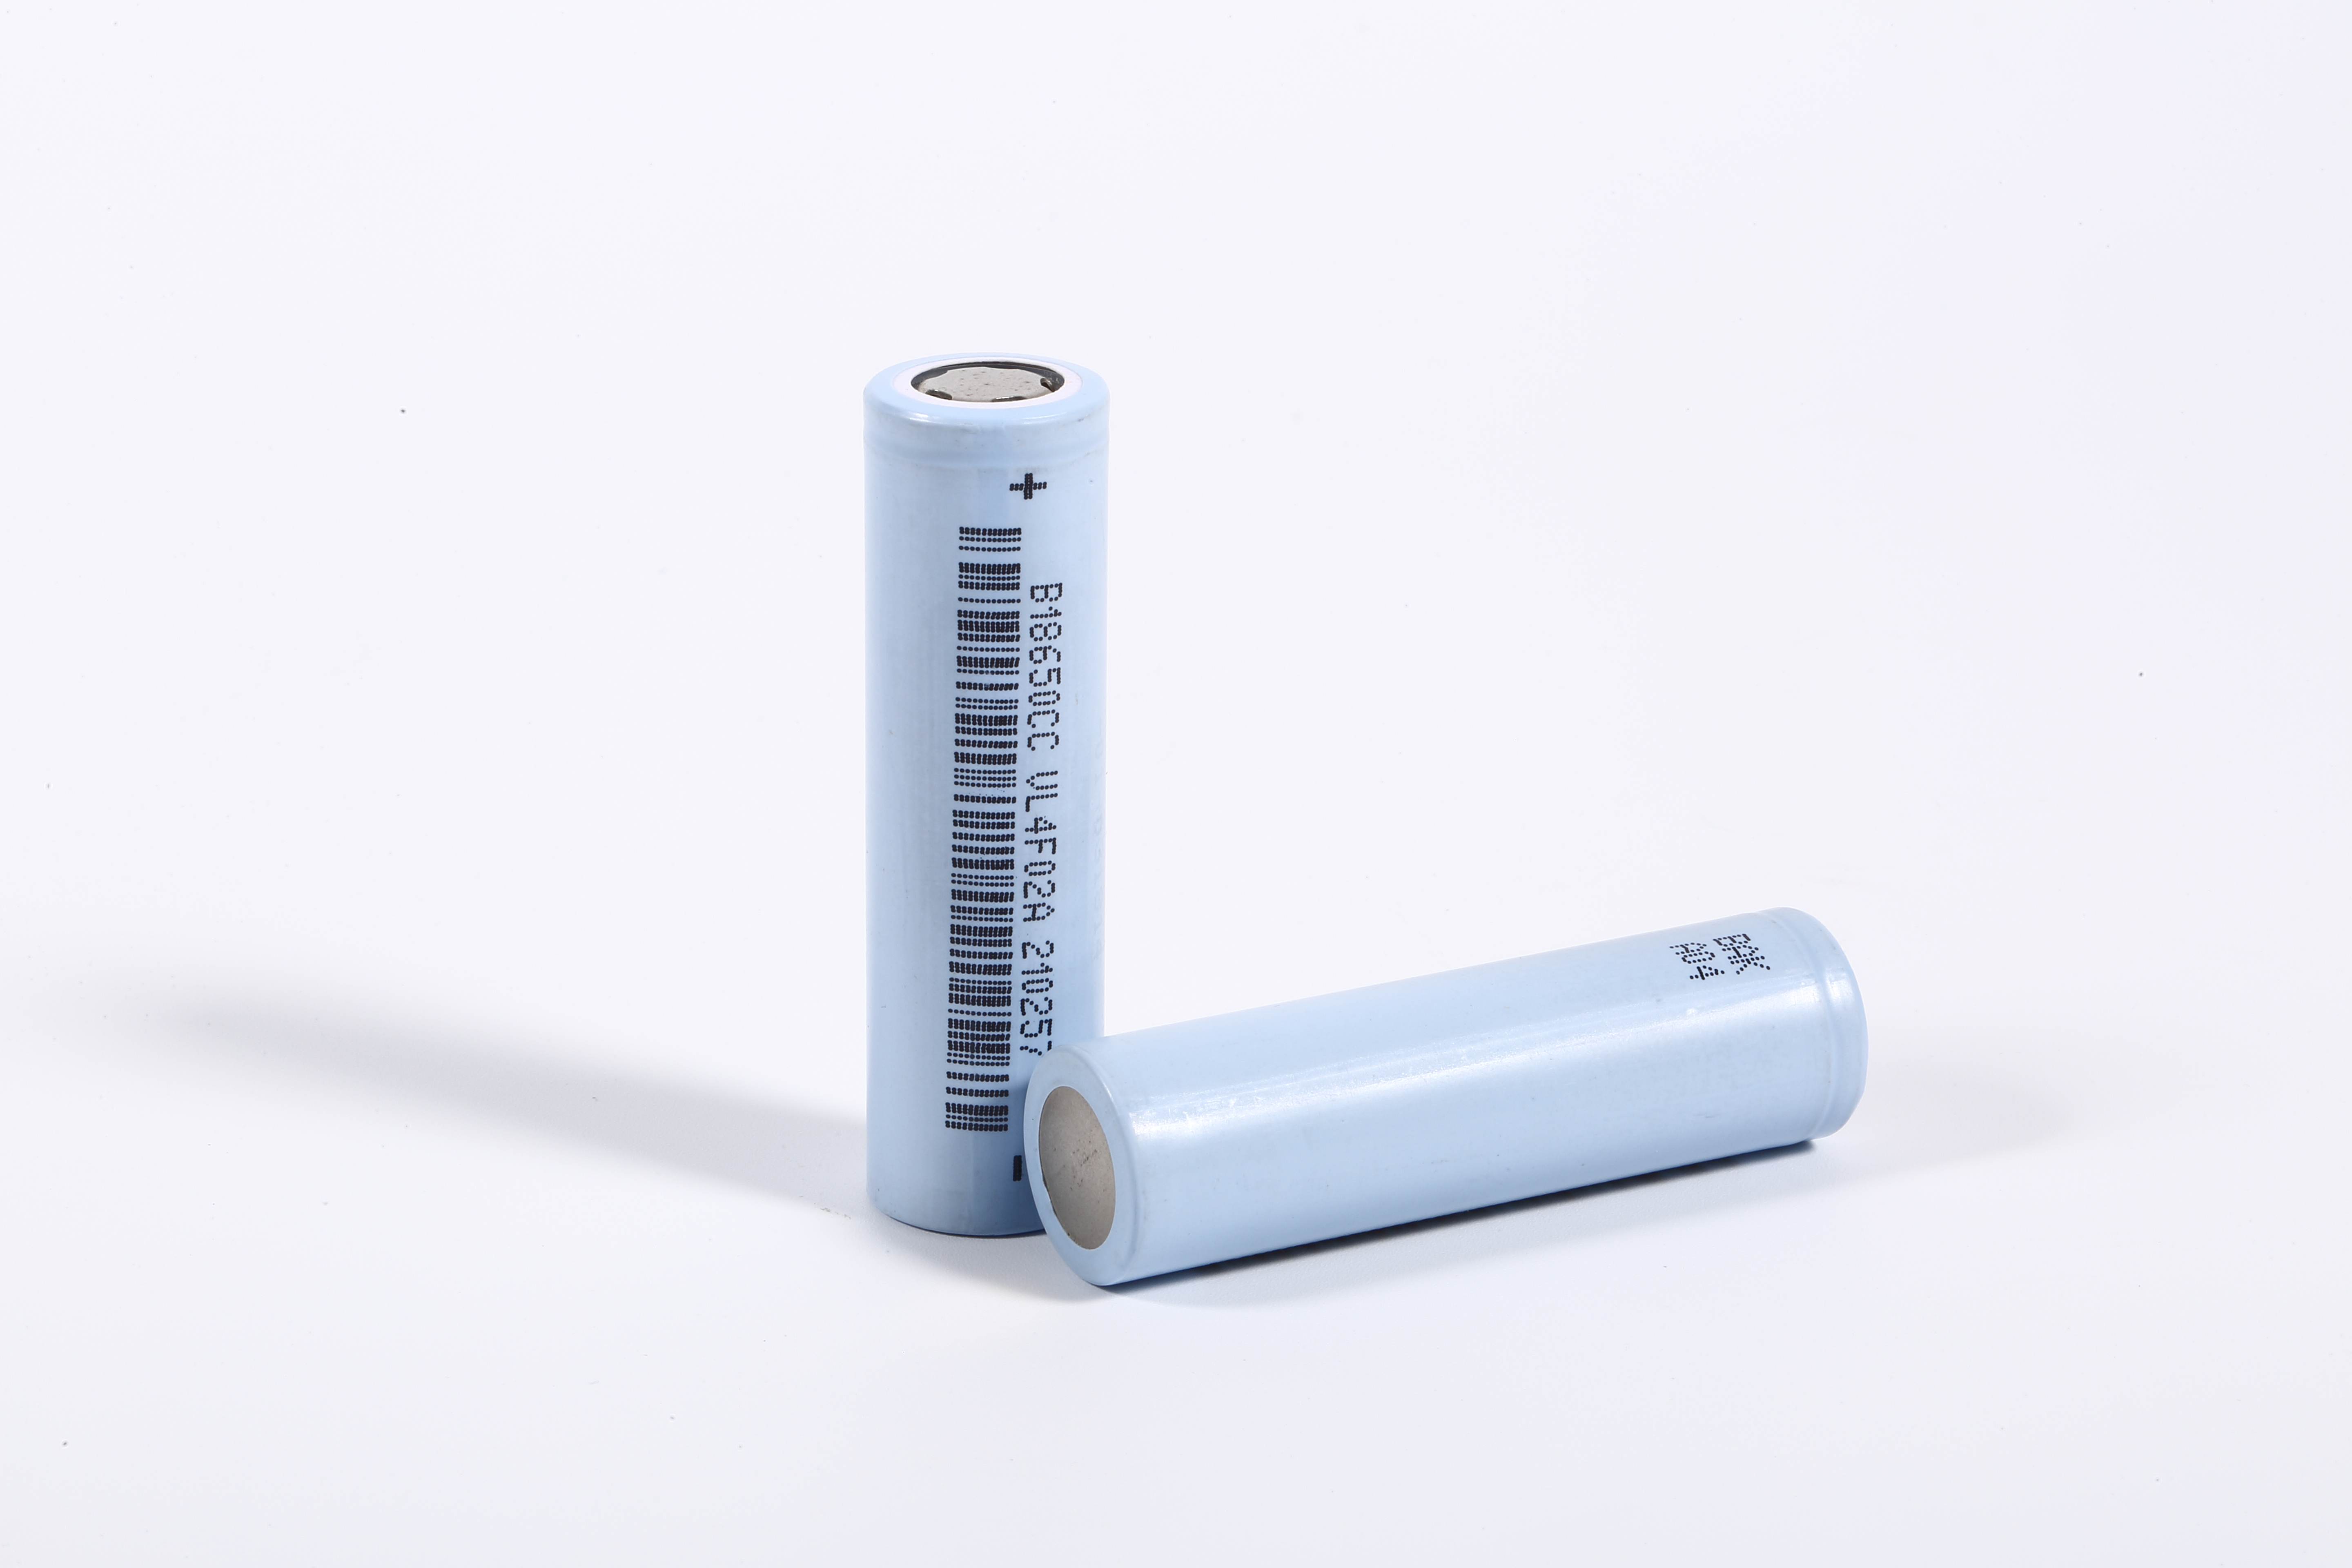 Baterias 18650 azuis de 3,6 volts para ebike